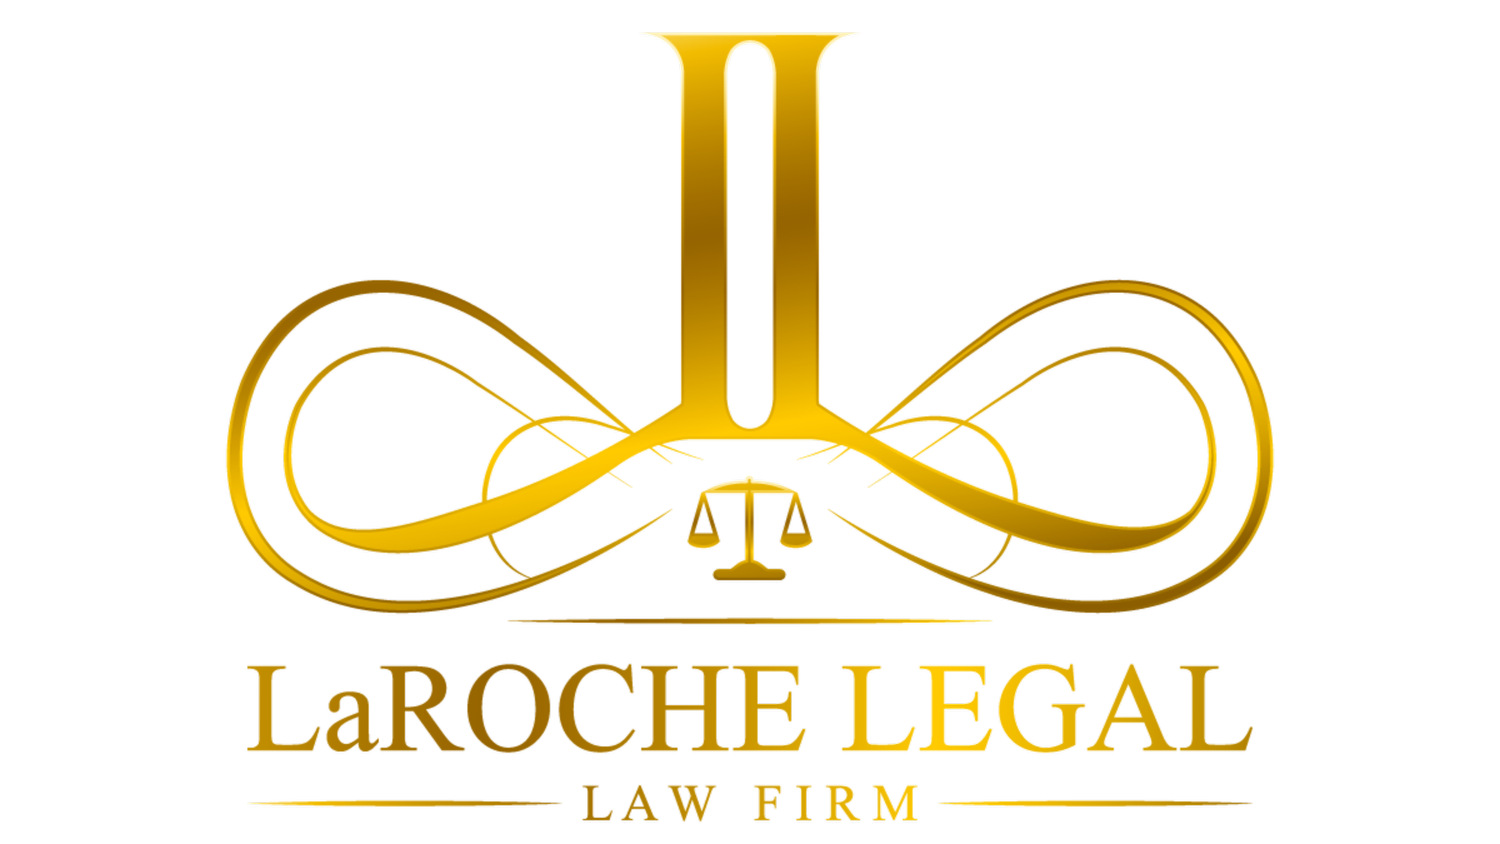 LaRoche Legal Law Firm